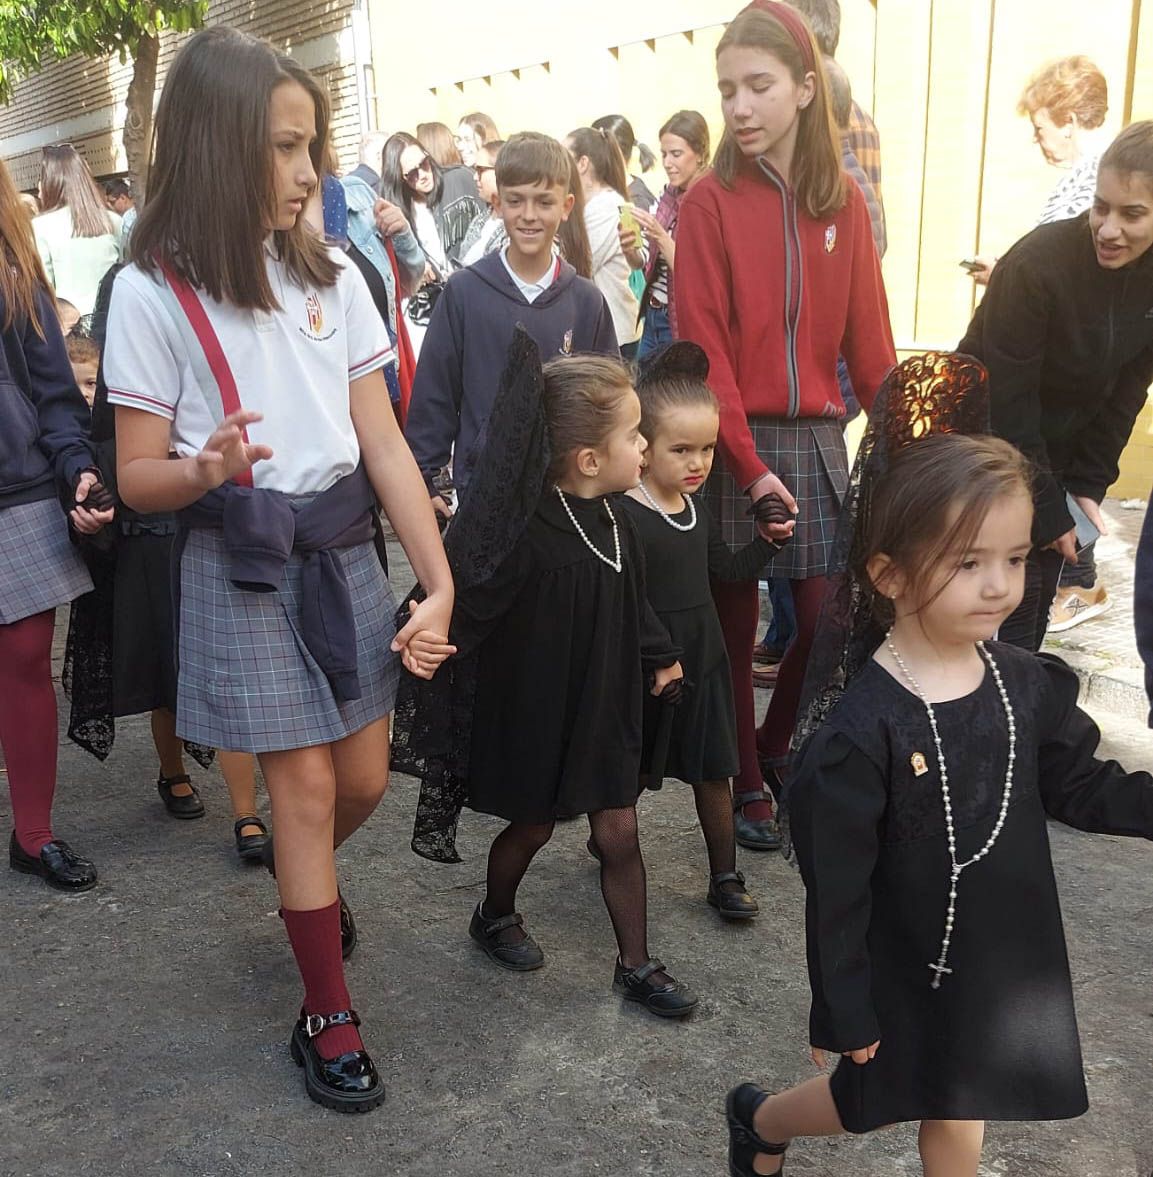 La Semana Santa infantil toma las calles de Córdoba